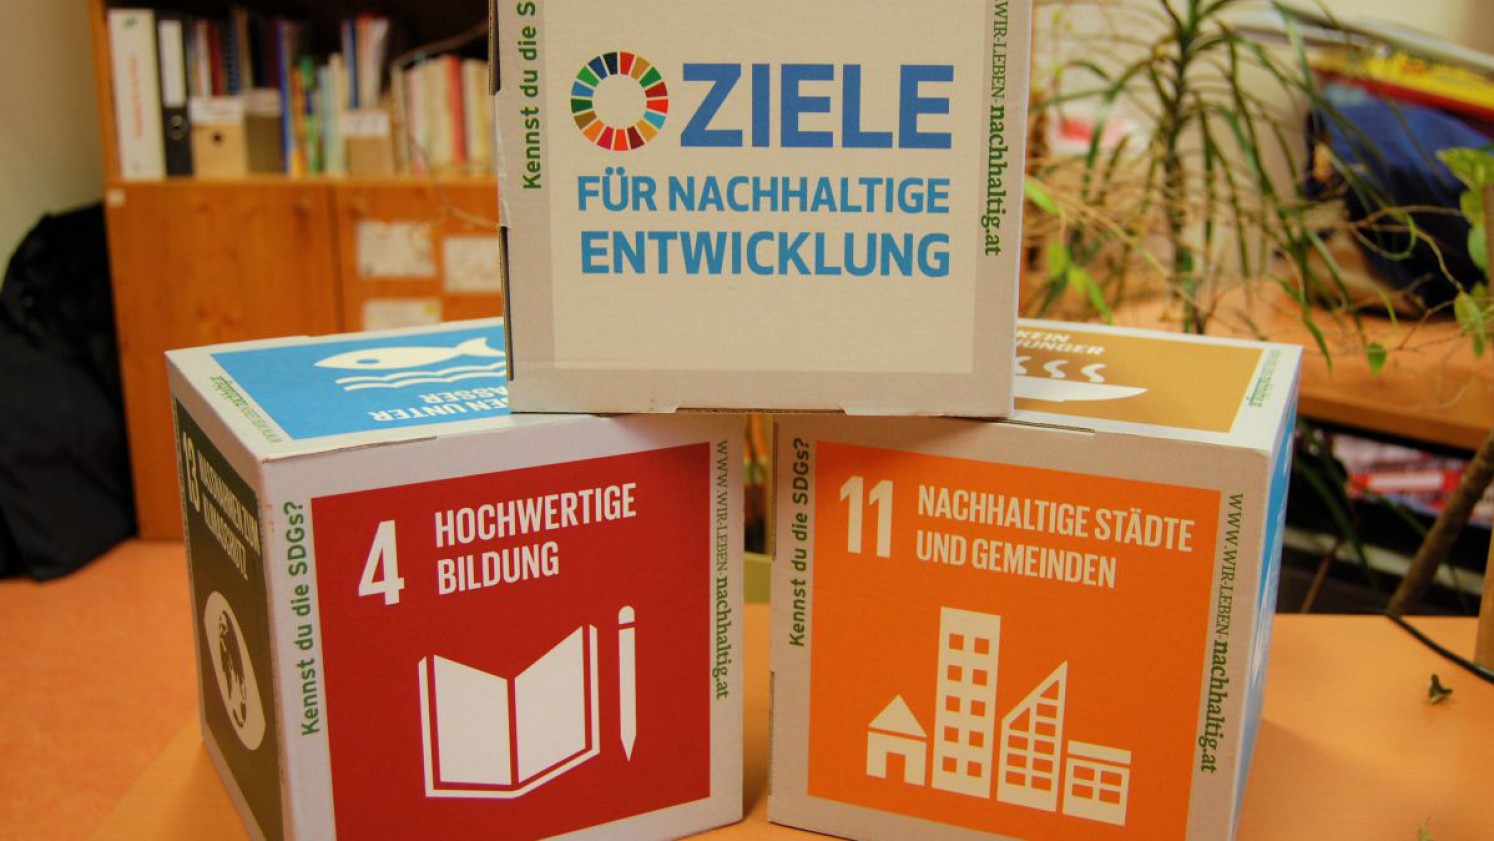 Die 17 Ziele für eine nachhaltige Entwicklung als Würfel dargestellt.